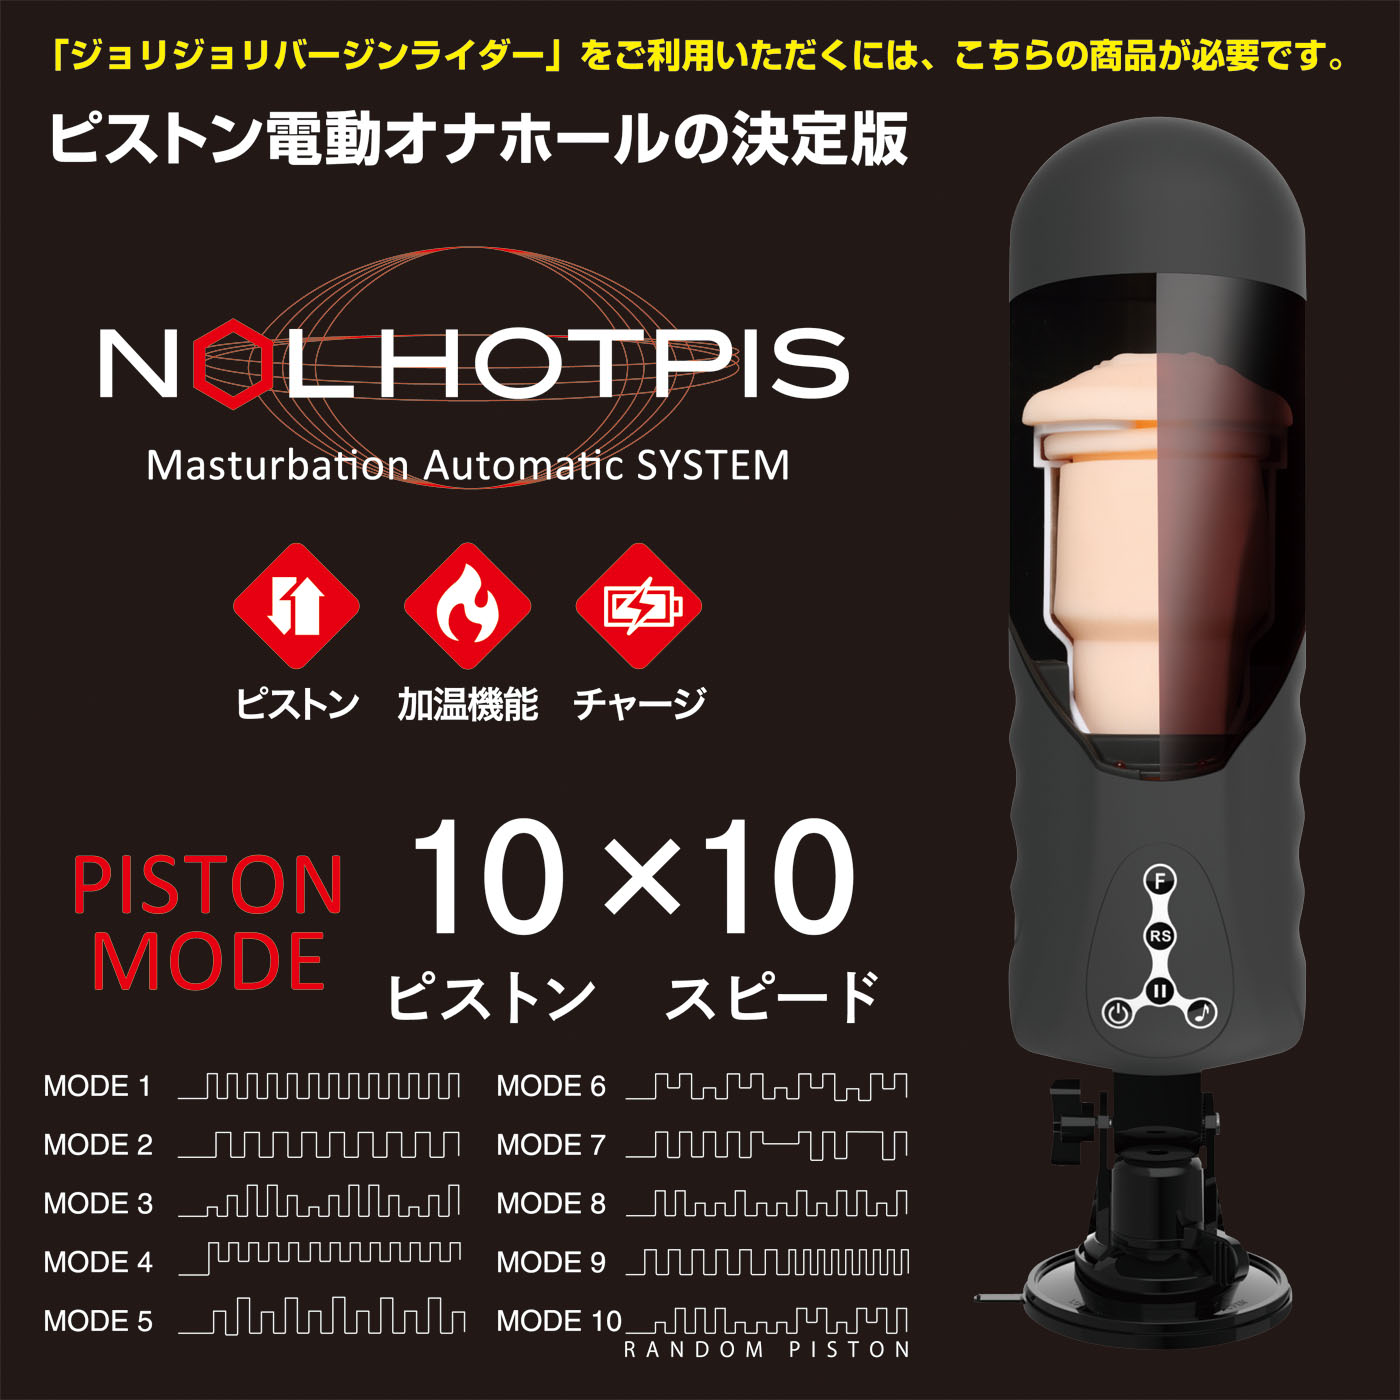 JAPAN-TOYZ NOL HOTPIS（ノール ホッピス）のピストン表